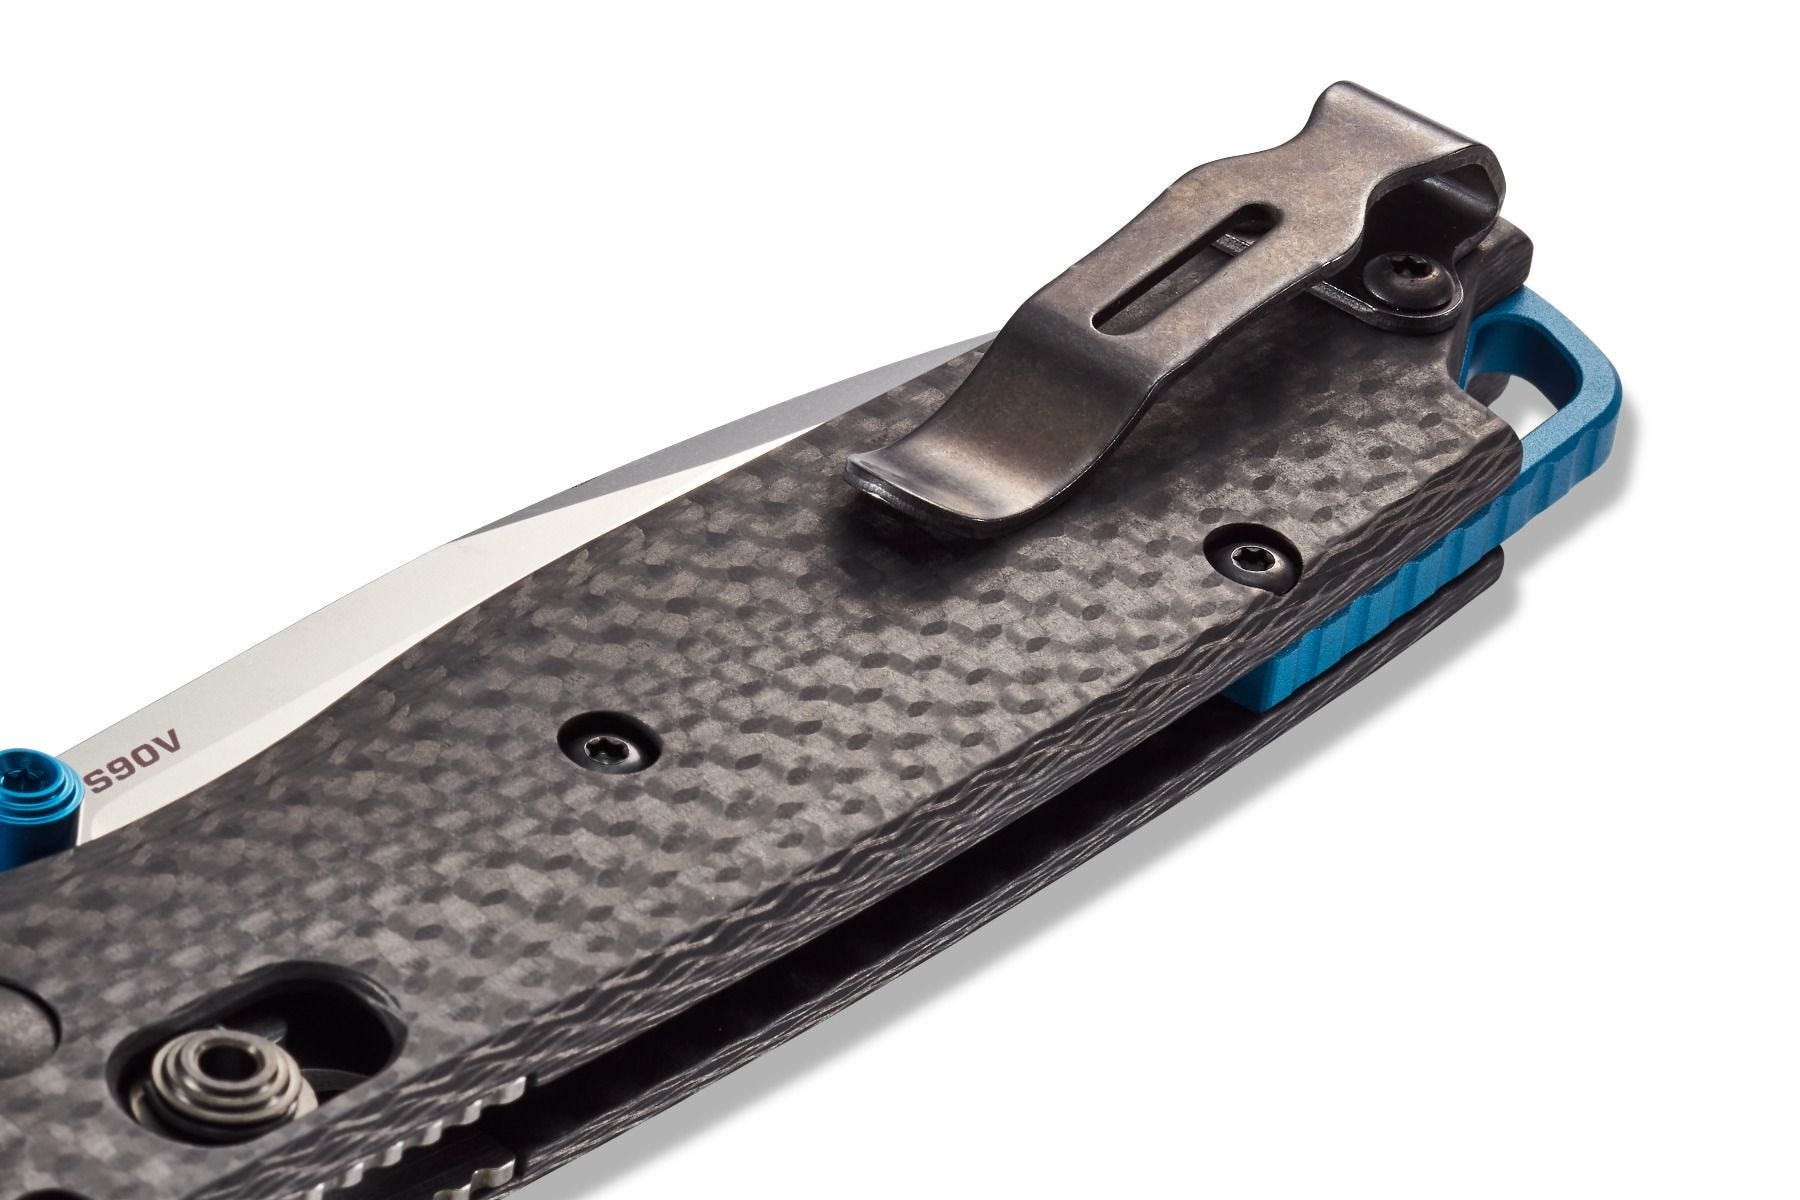 Couteau pliant Bugout Carbon elite 535-3 - Benchmade-T.A DEFENSE